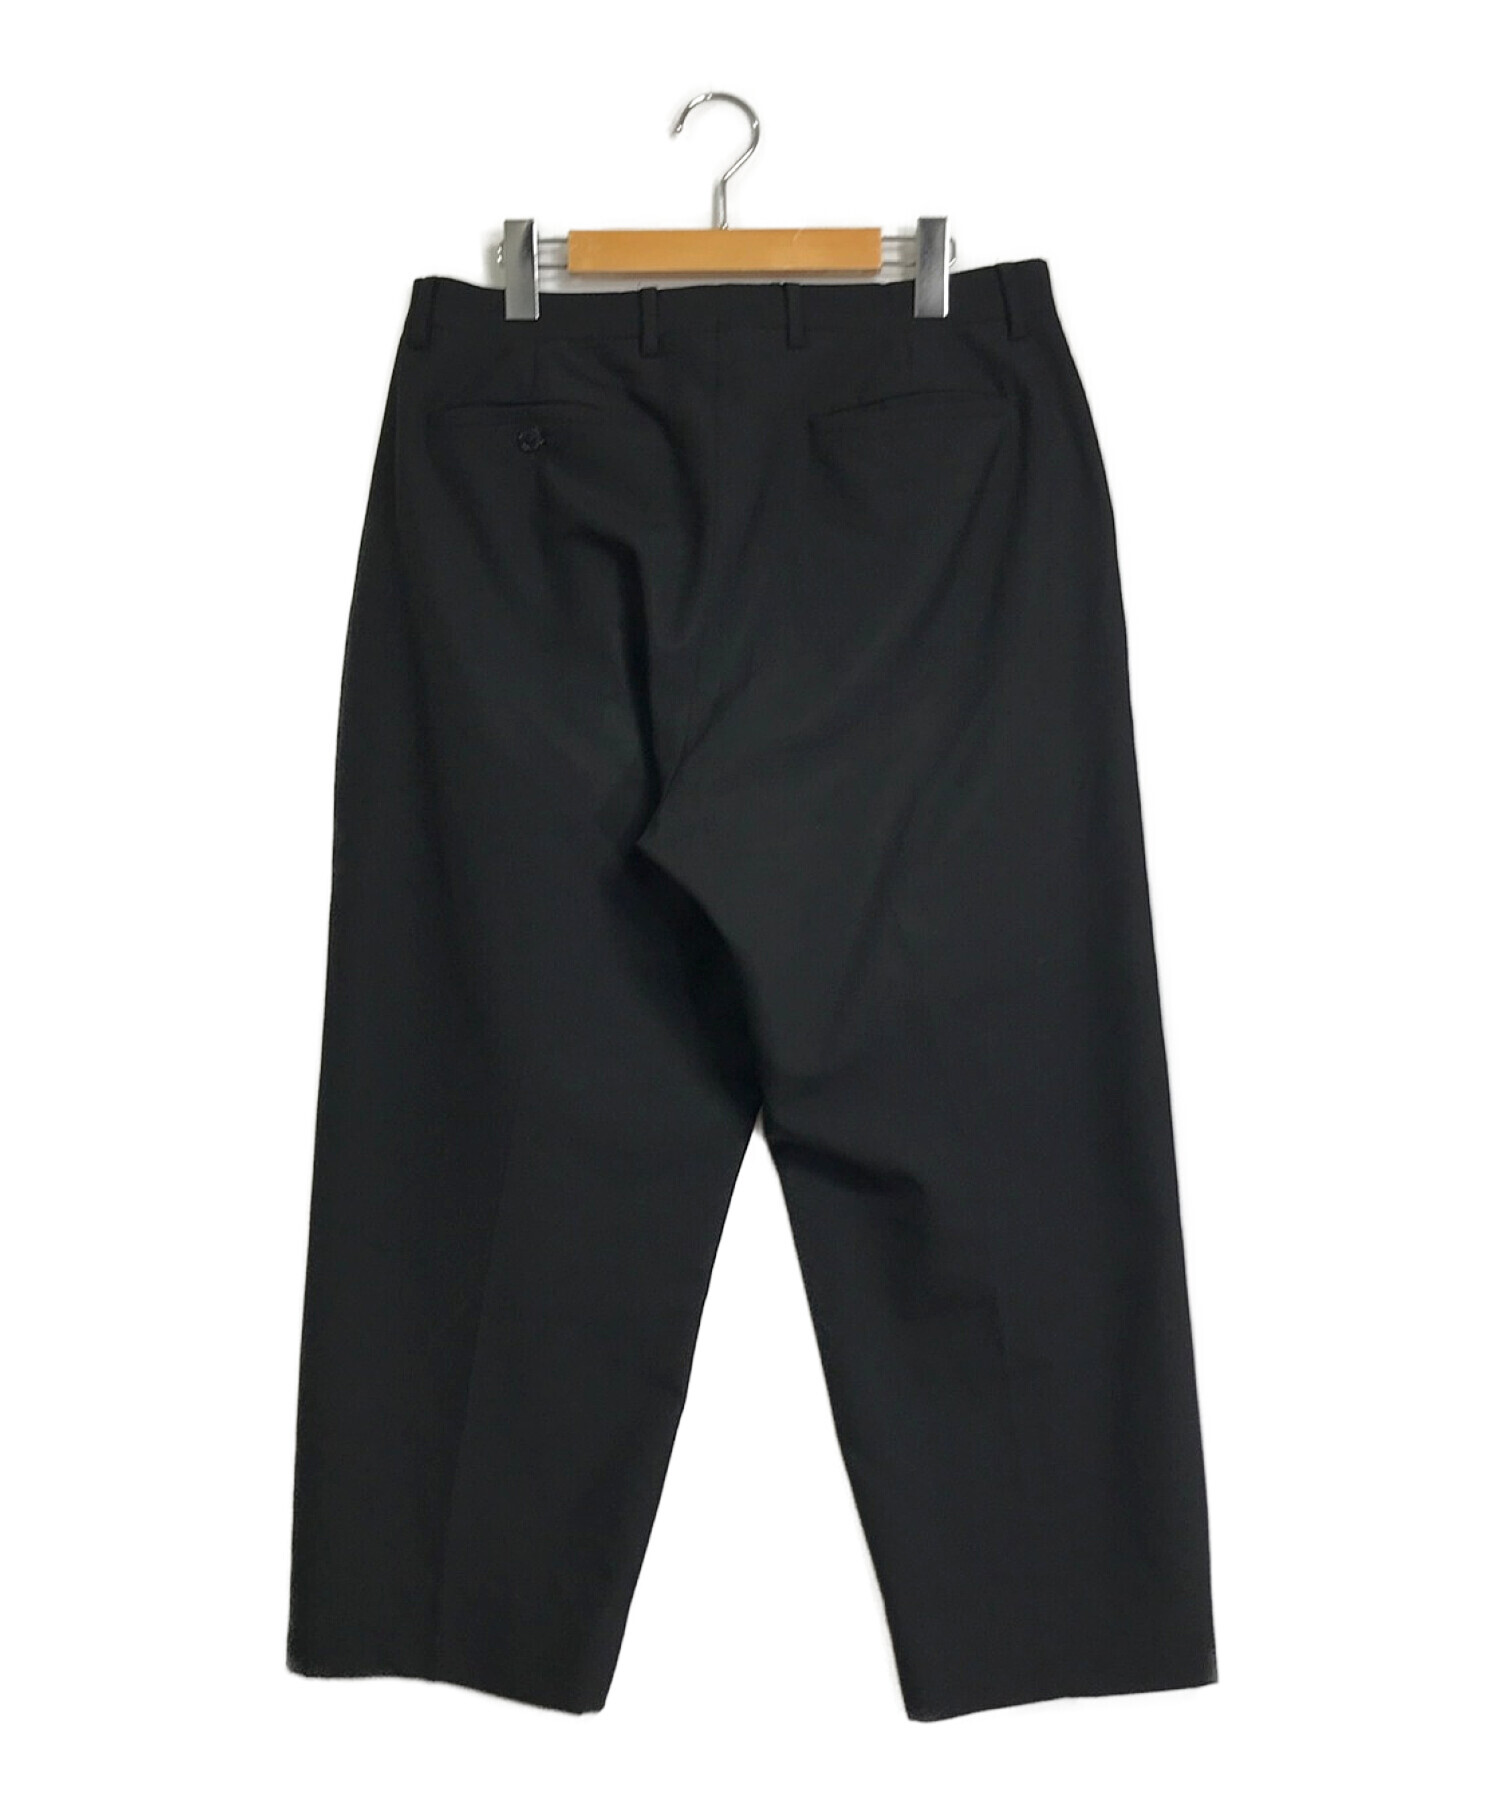 【日本製人気】supreme pleated trouser black 2021 パンツ